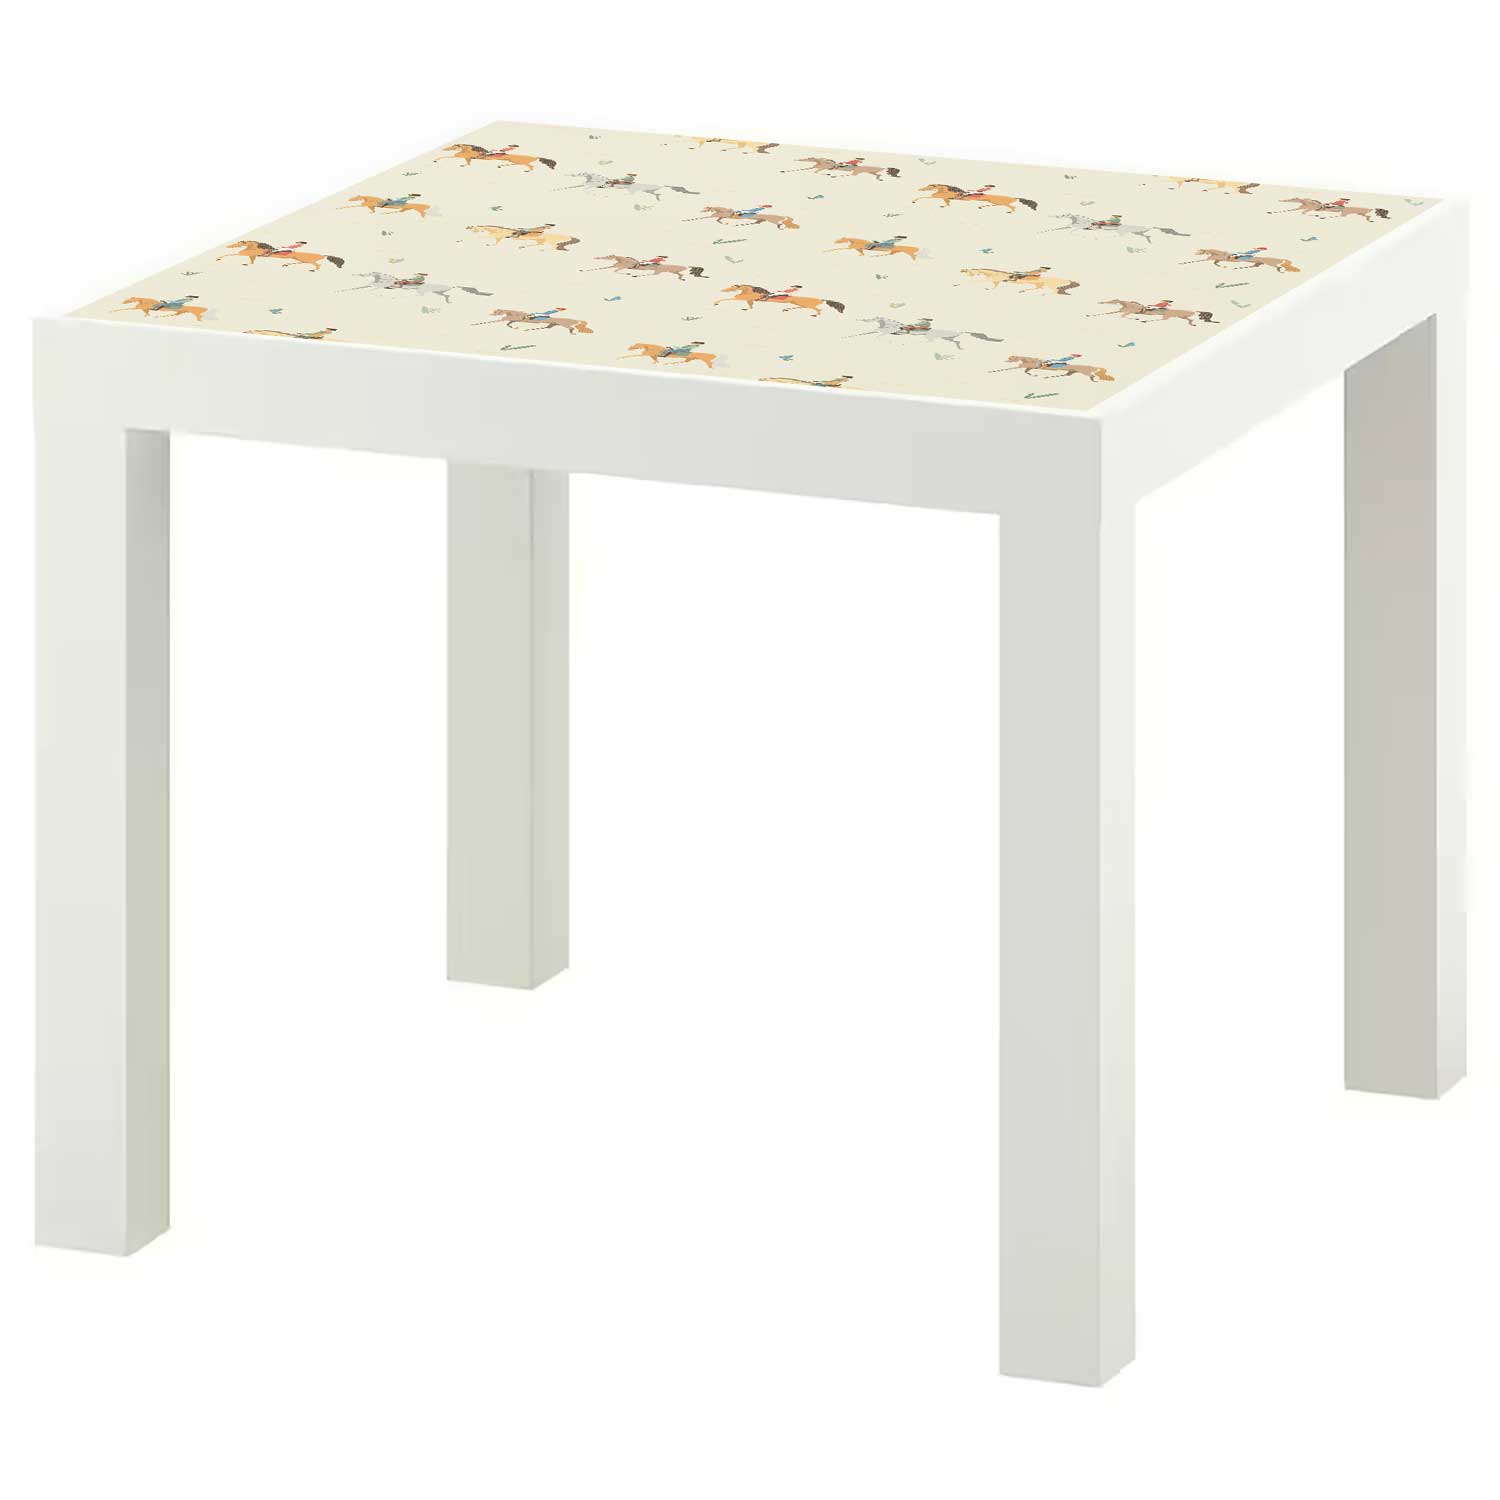 Möbelfolie Kinder für IKEA Lack Tisch 55x55 cm 'Pferde'